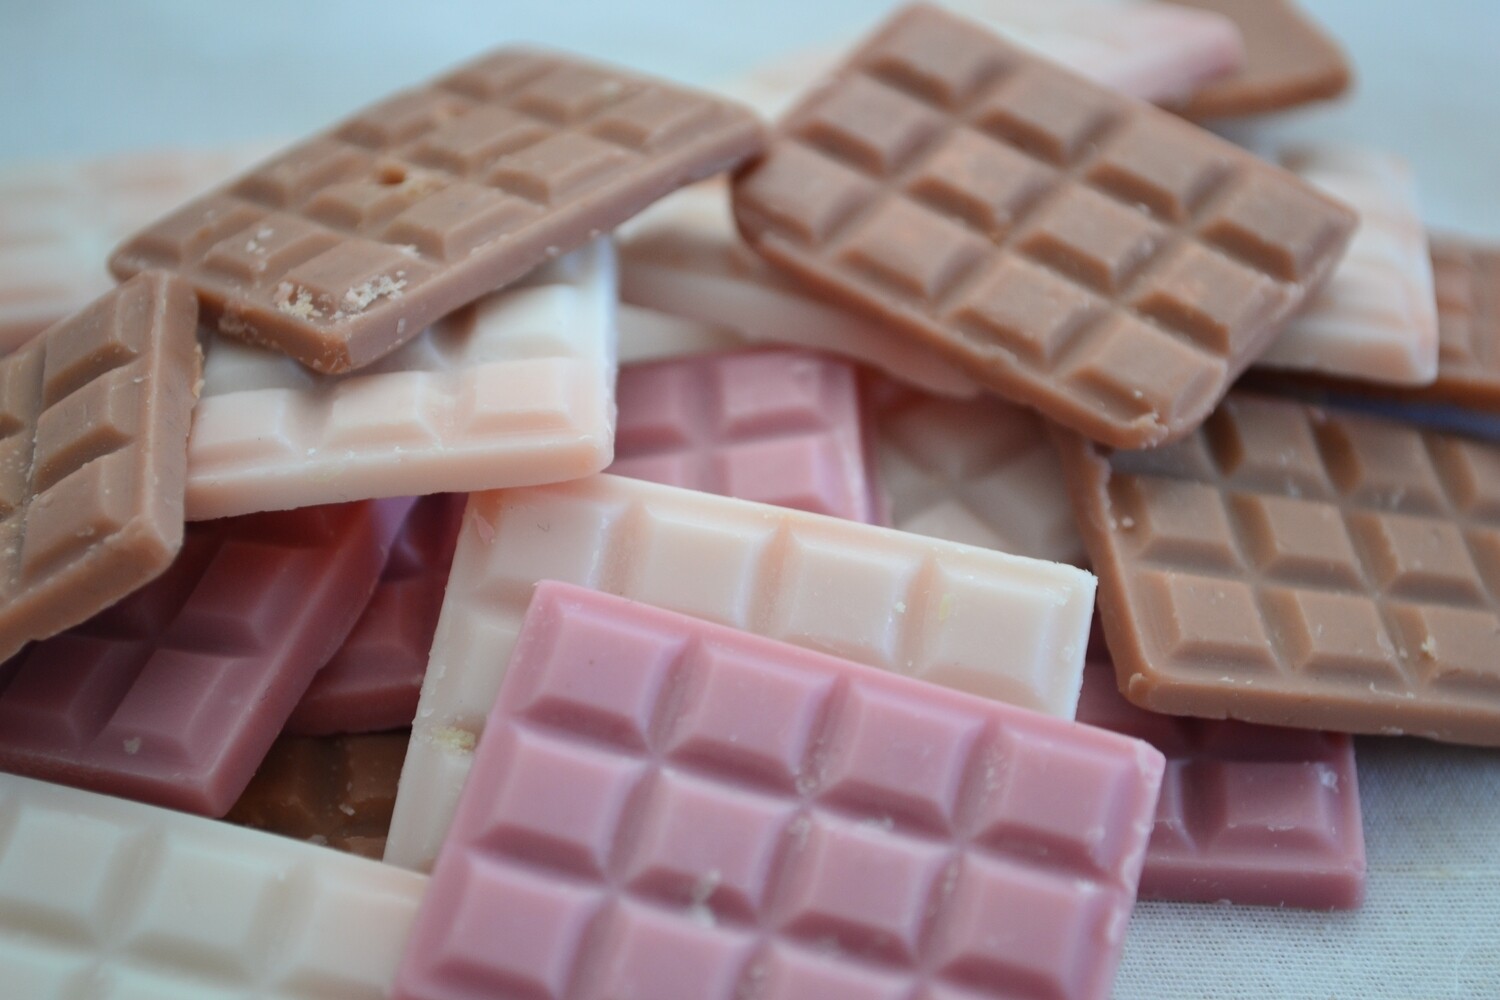 Les Tablettes De Chocolat à La Noix De Coco. L'unité à